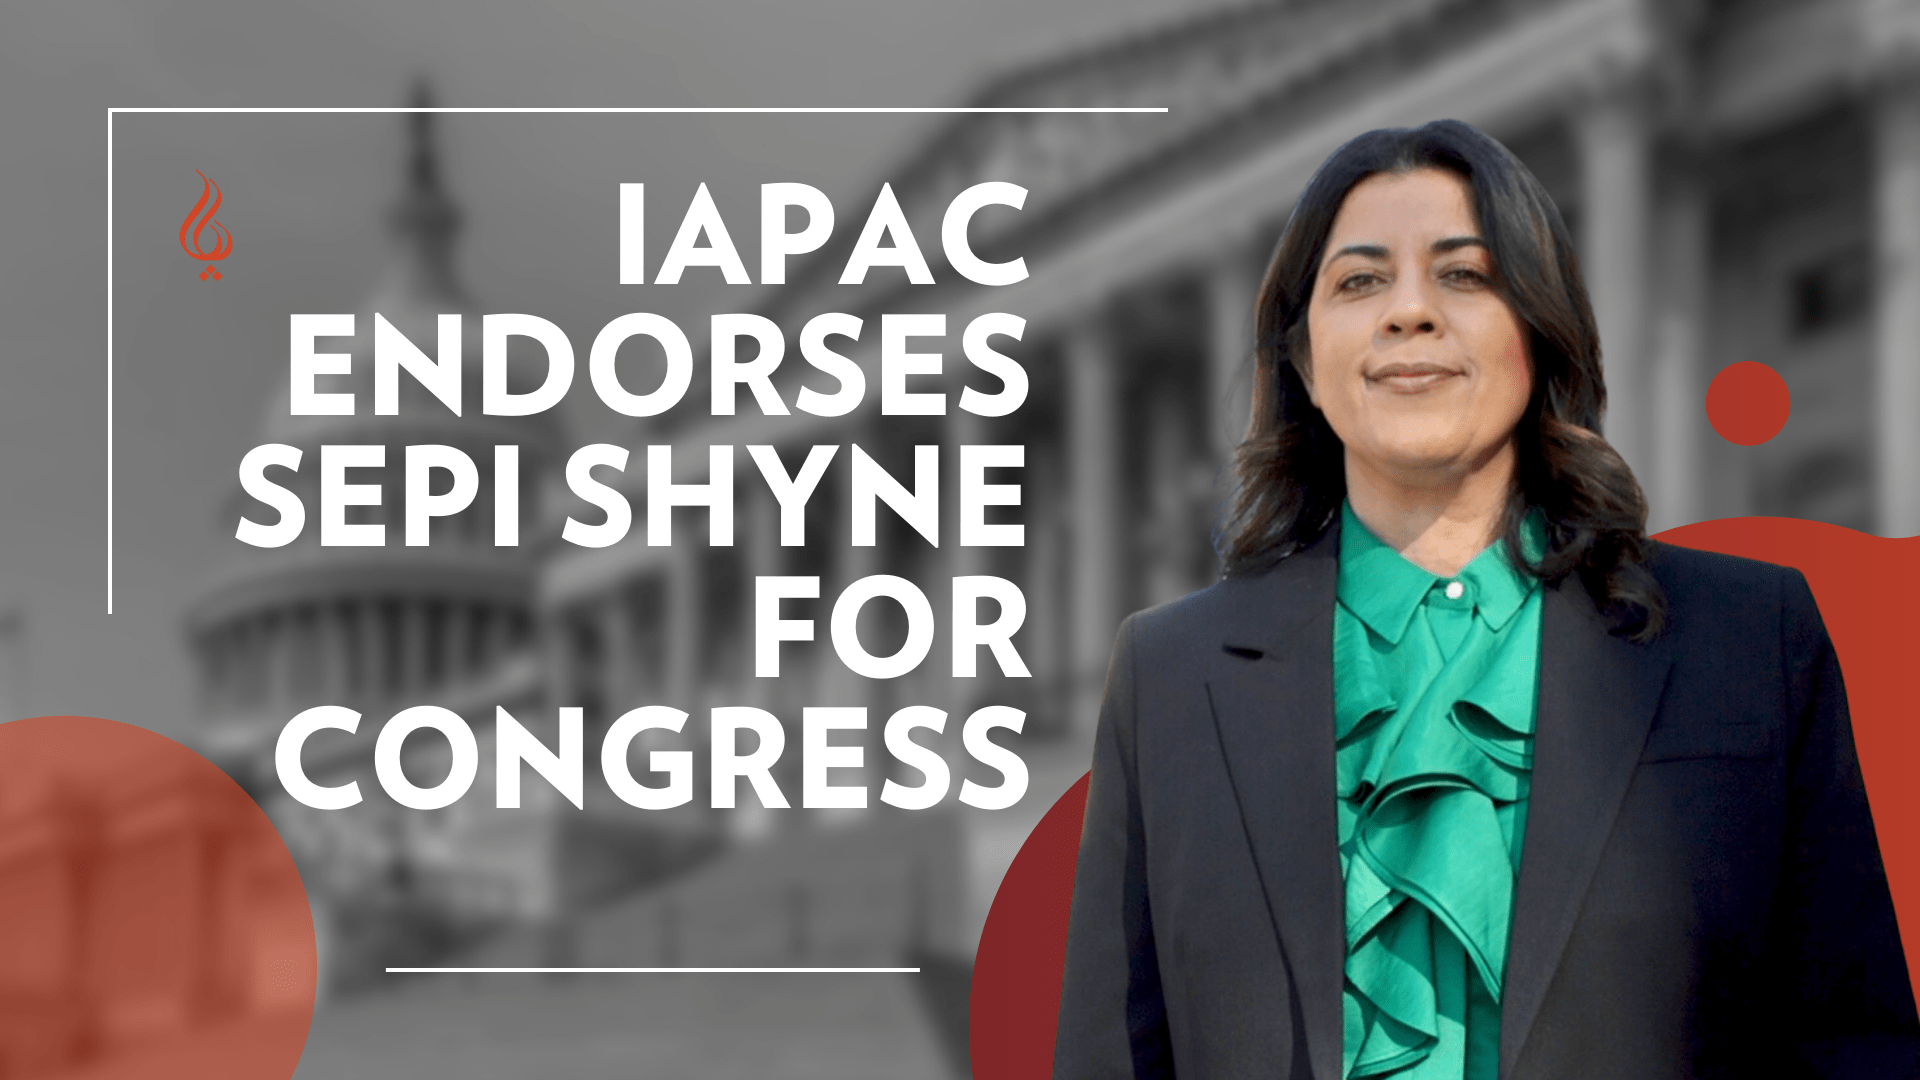 Sepi Shyne for Congress